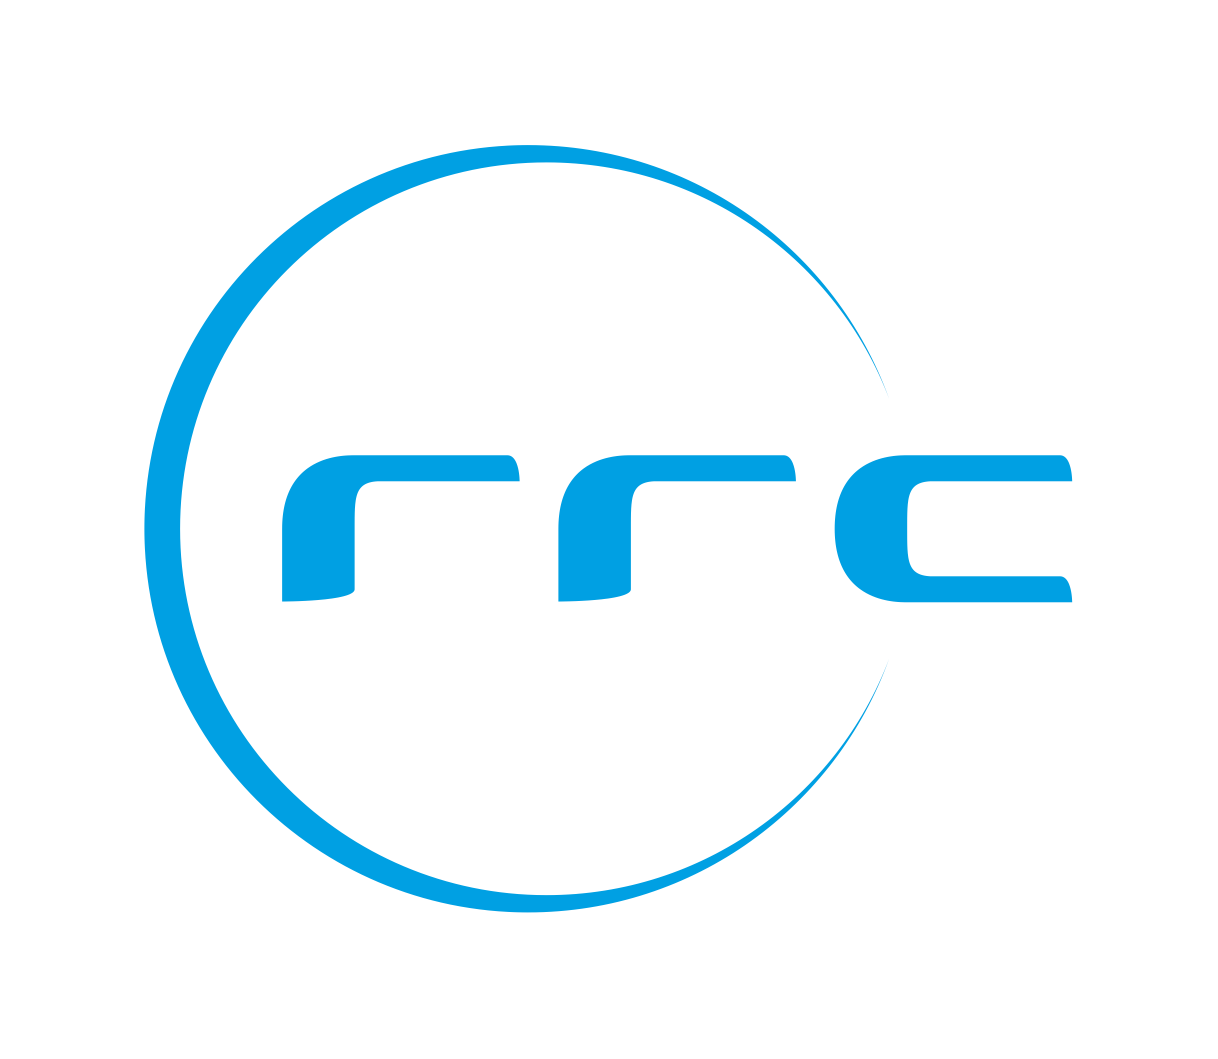 RRC Group